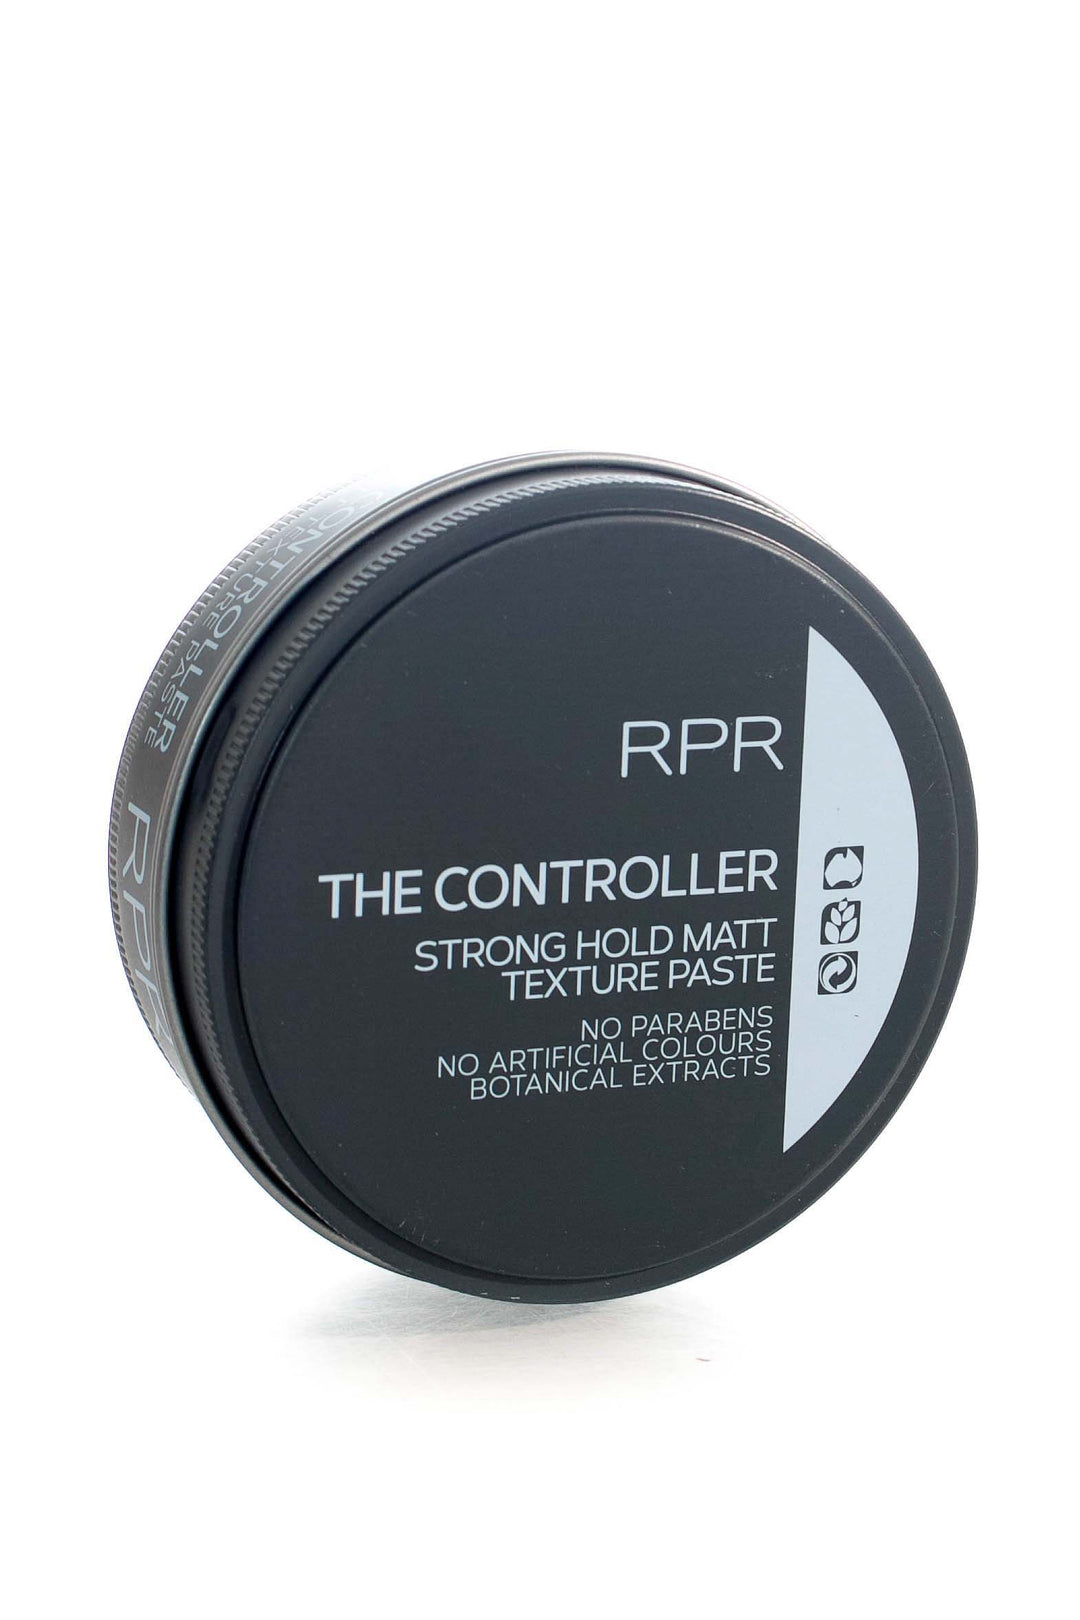 rpr-the-controller-90g